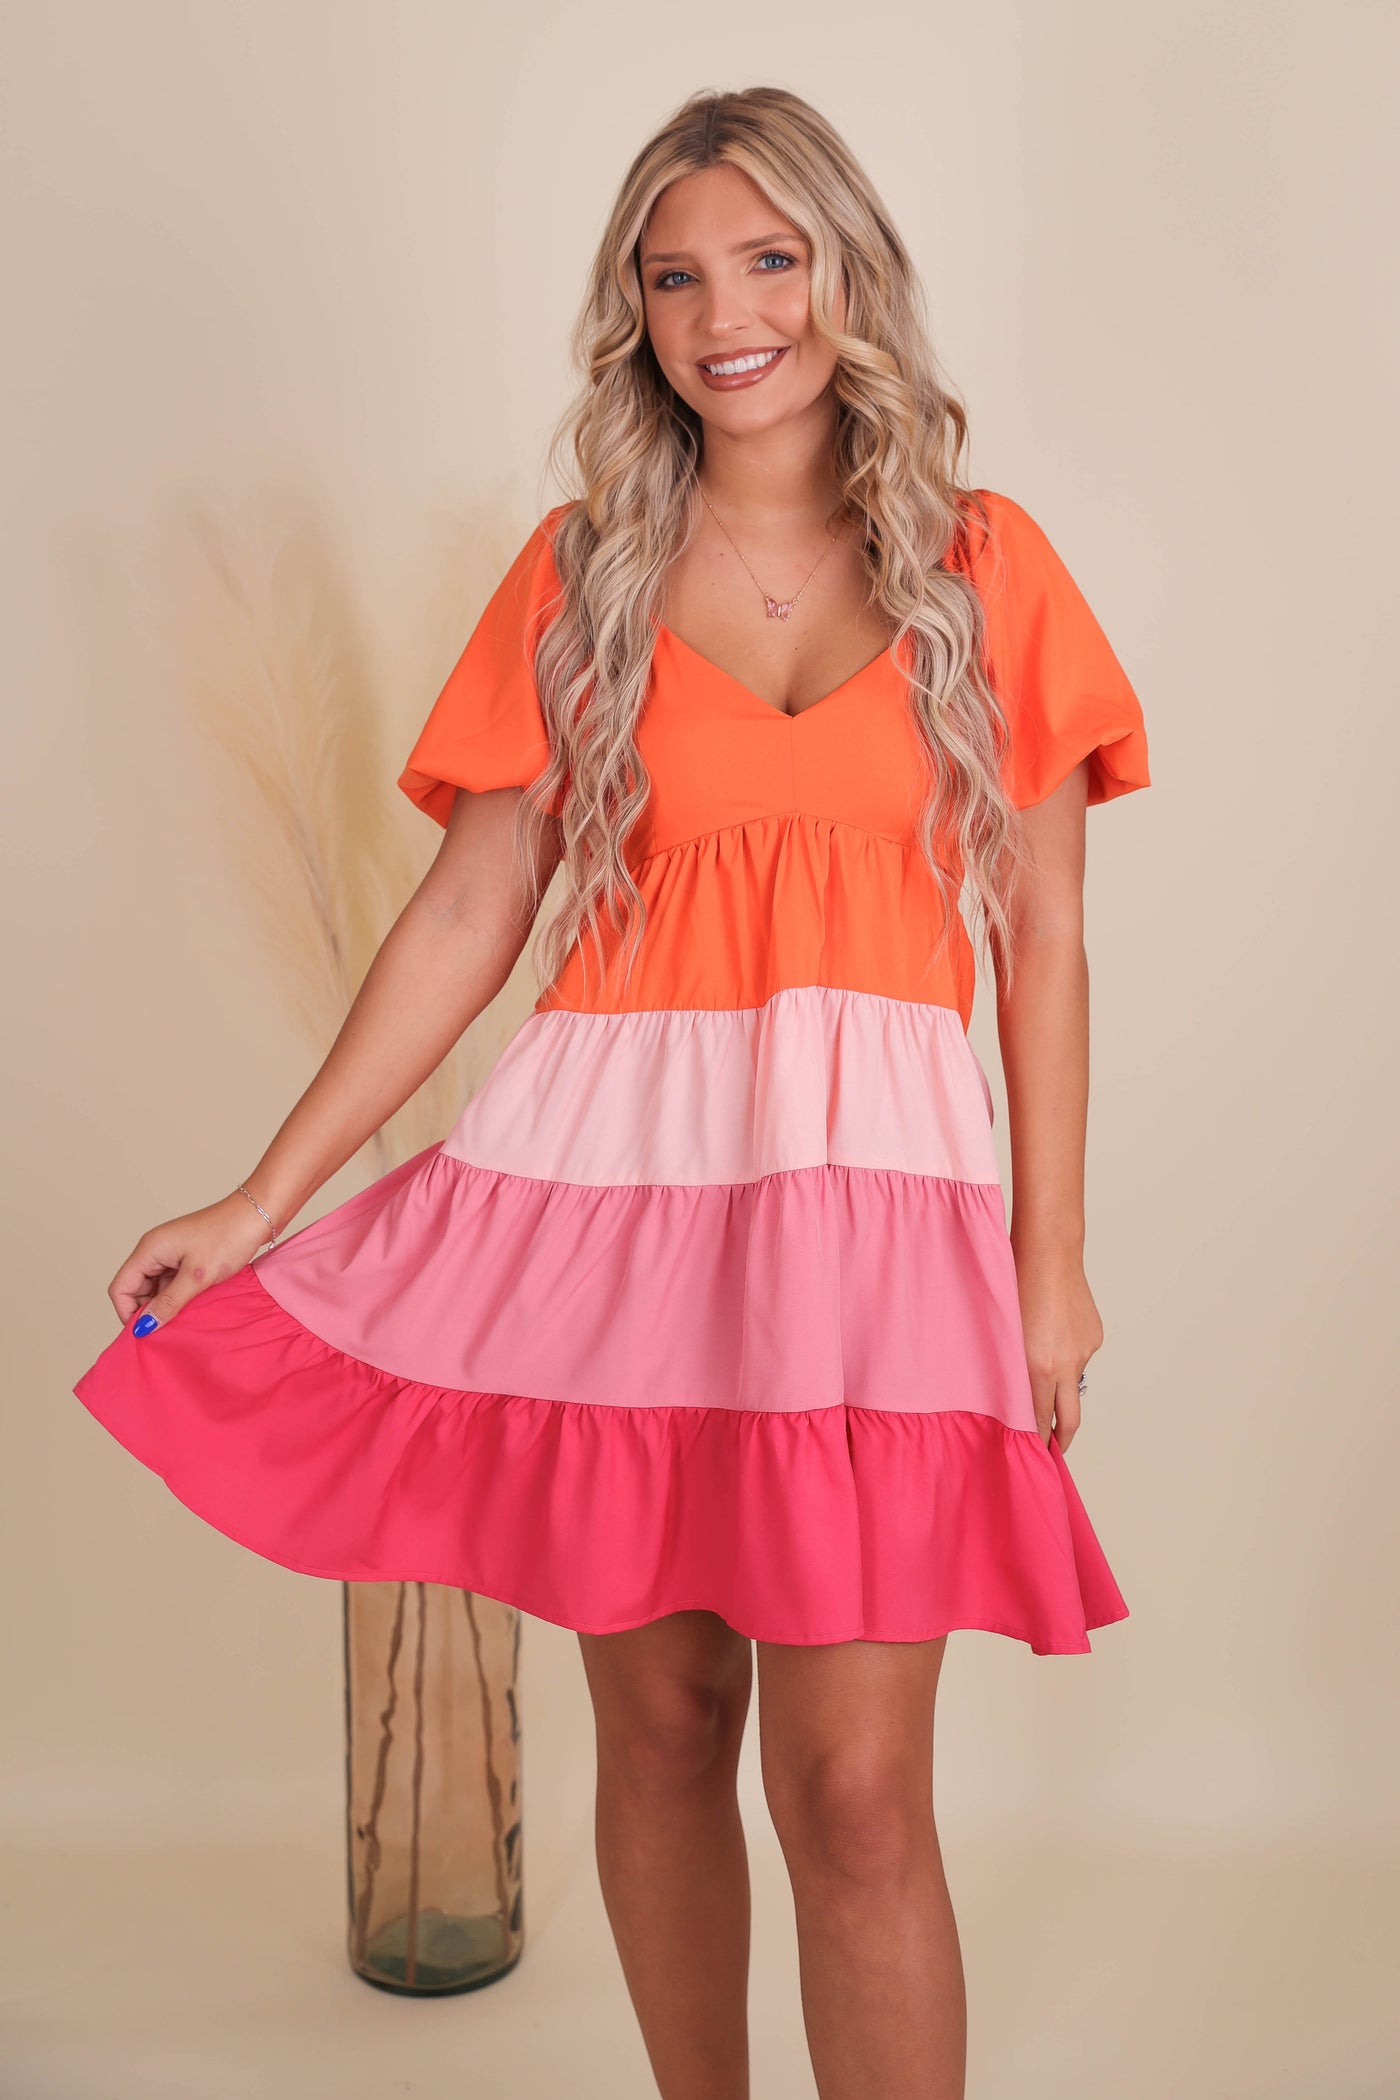 Women's Pink Ombre Dress- Fun Summer Dresses- Colorful Women's Dress